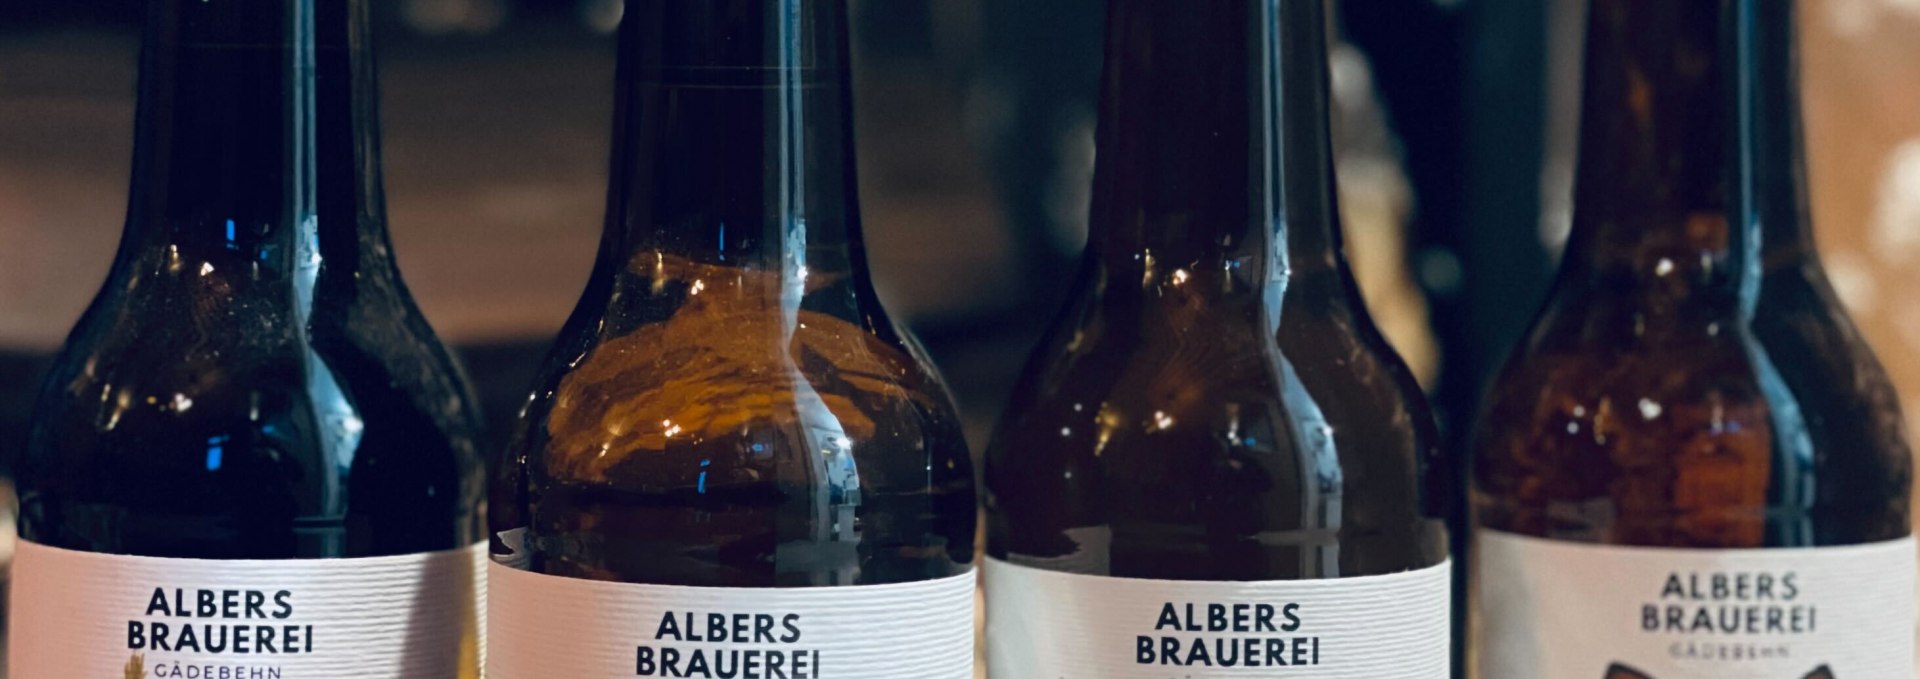 Getränke von Albers Brauerei, © Albers Brauerei